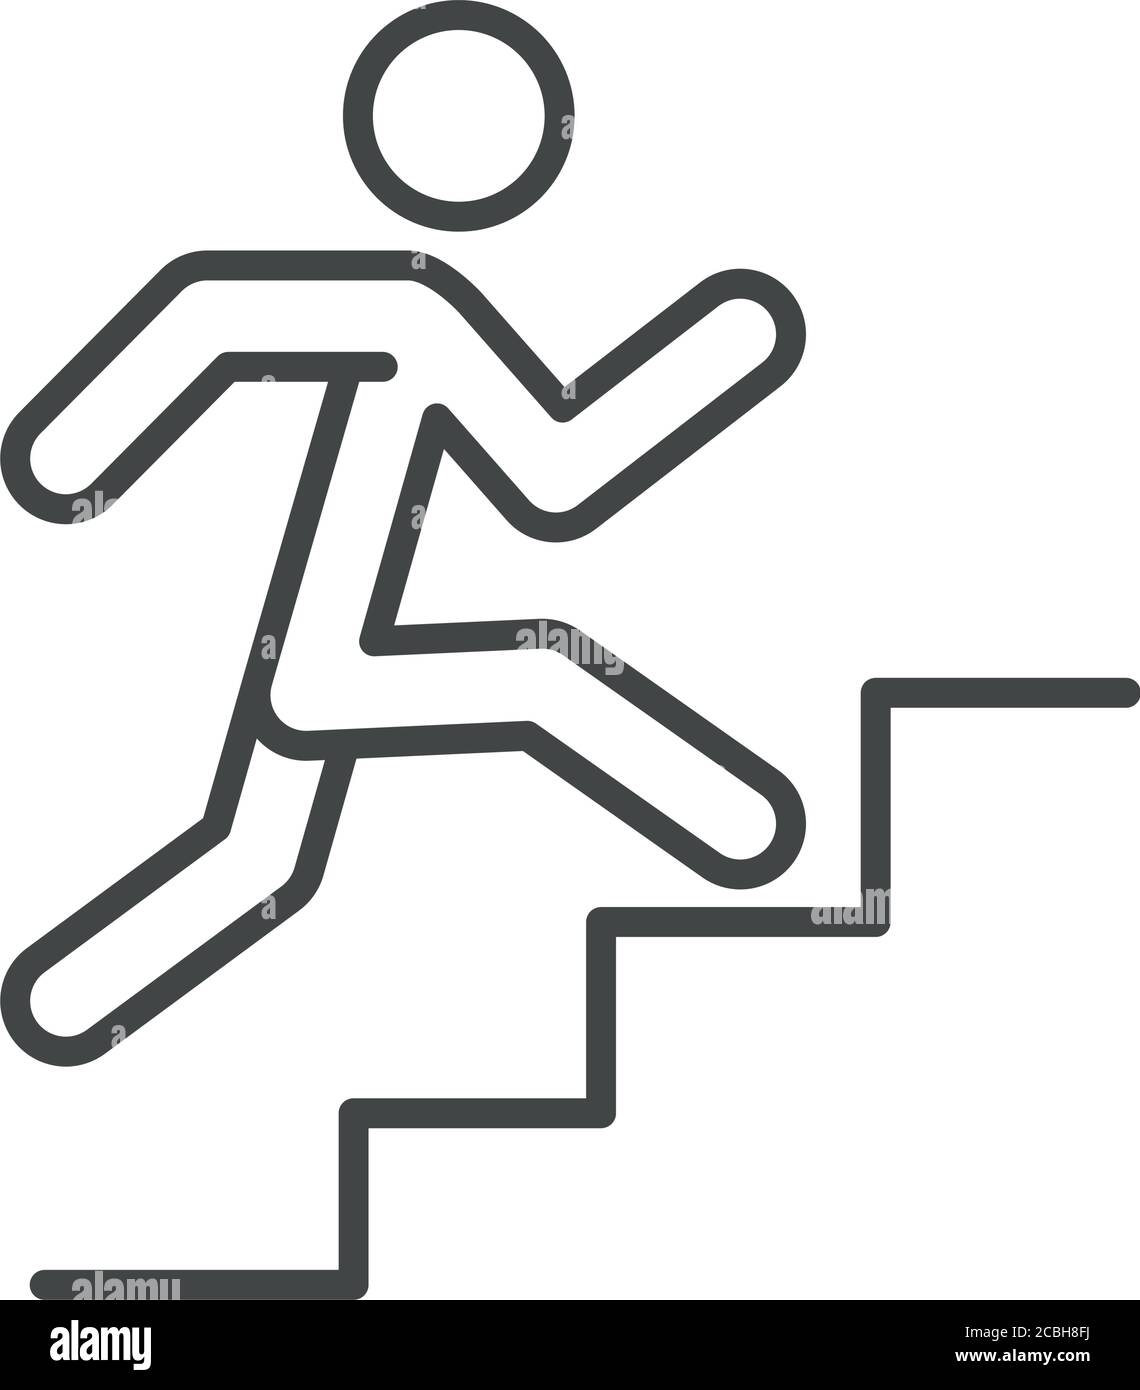 Corriendo escaleras Imágenes vectoriales de stock - Alamy